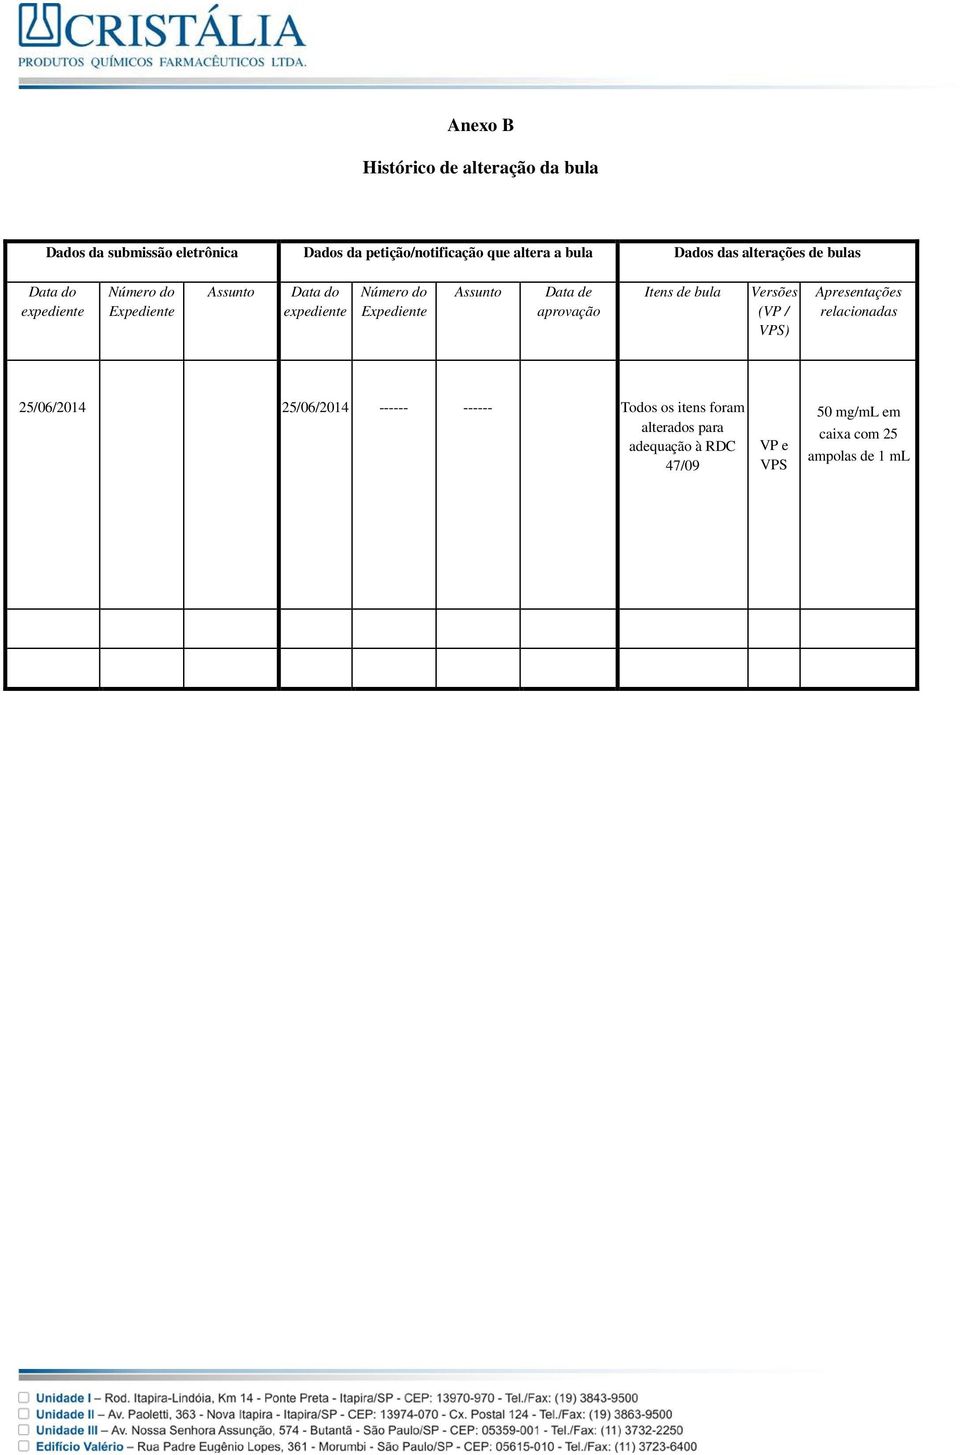 Expediente Assunto Data de aprovação Itens de bula Versões (VP / VPS) Apresentações relacionadas 25/06/2014